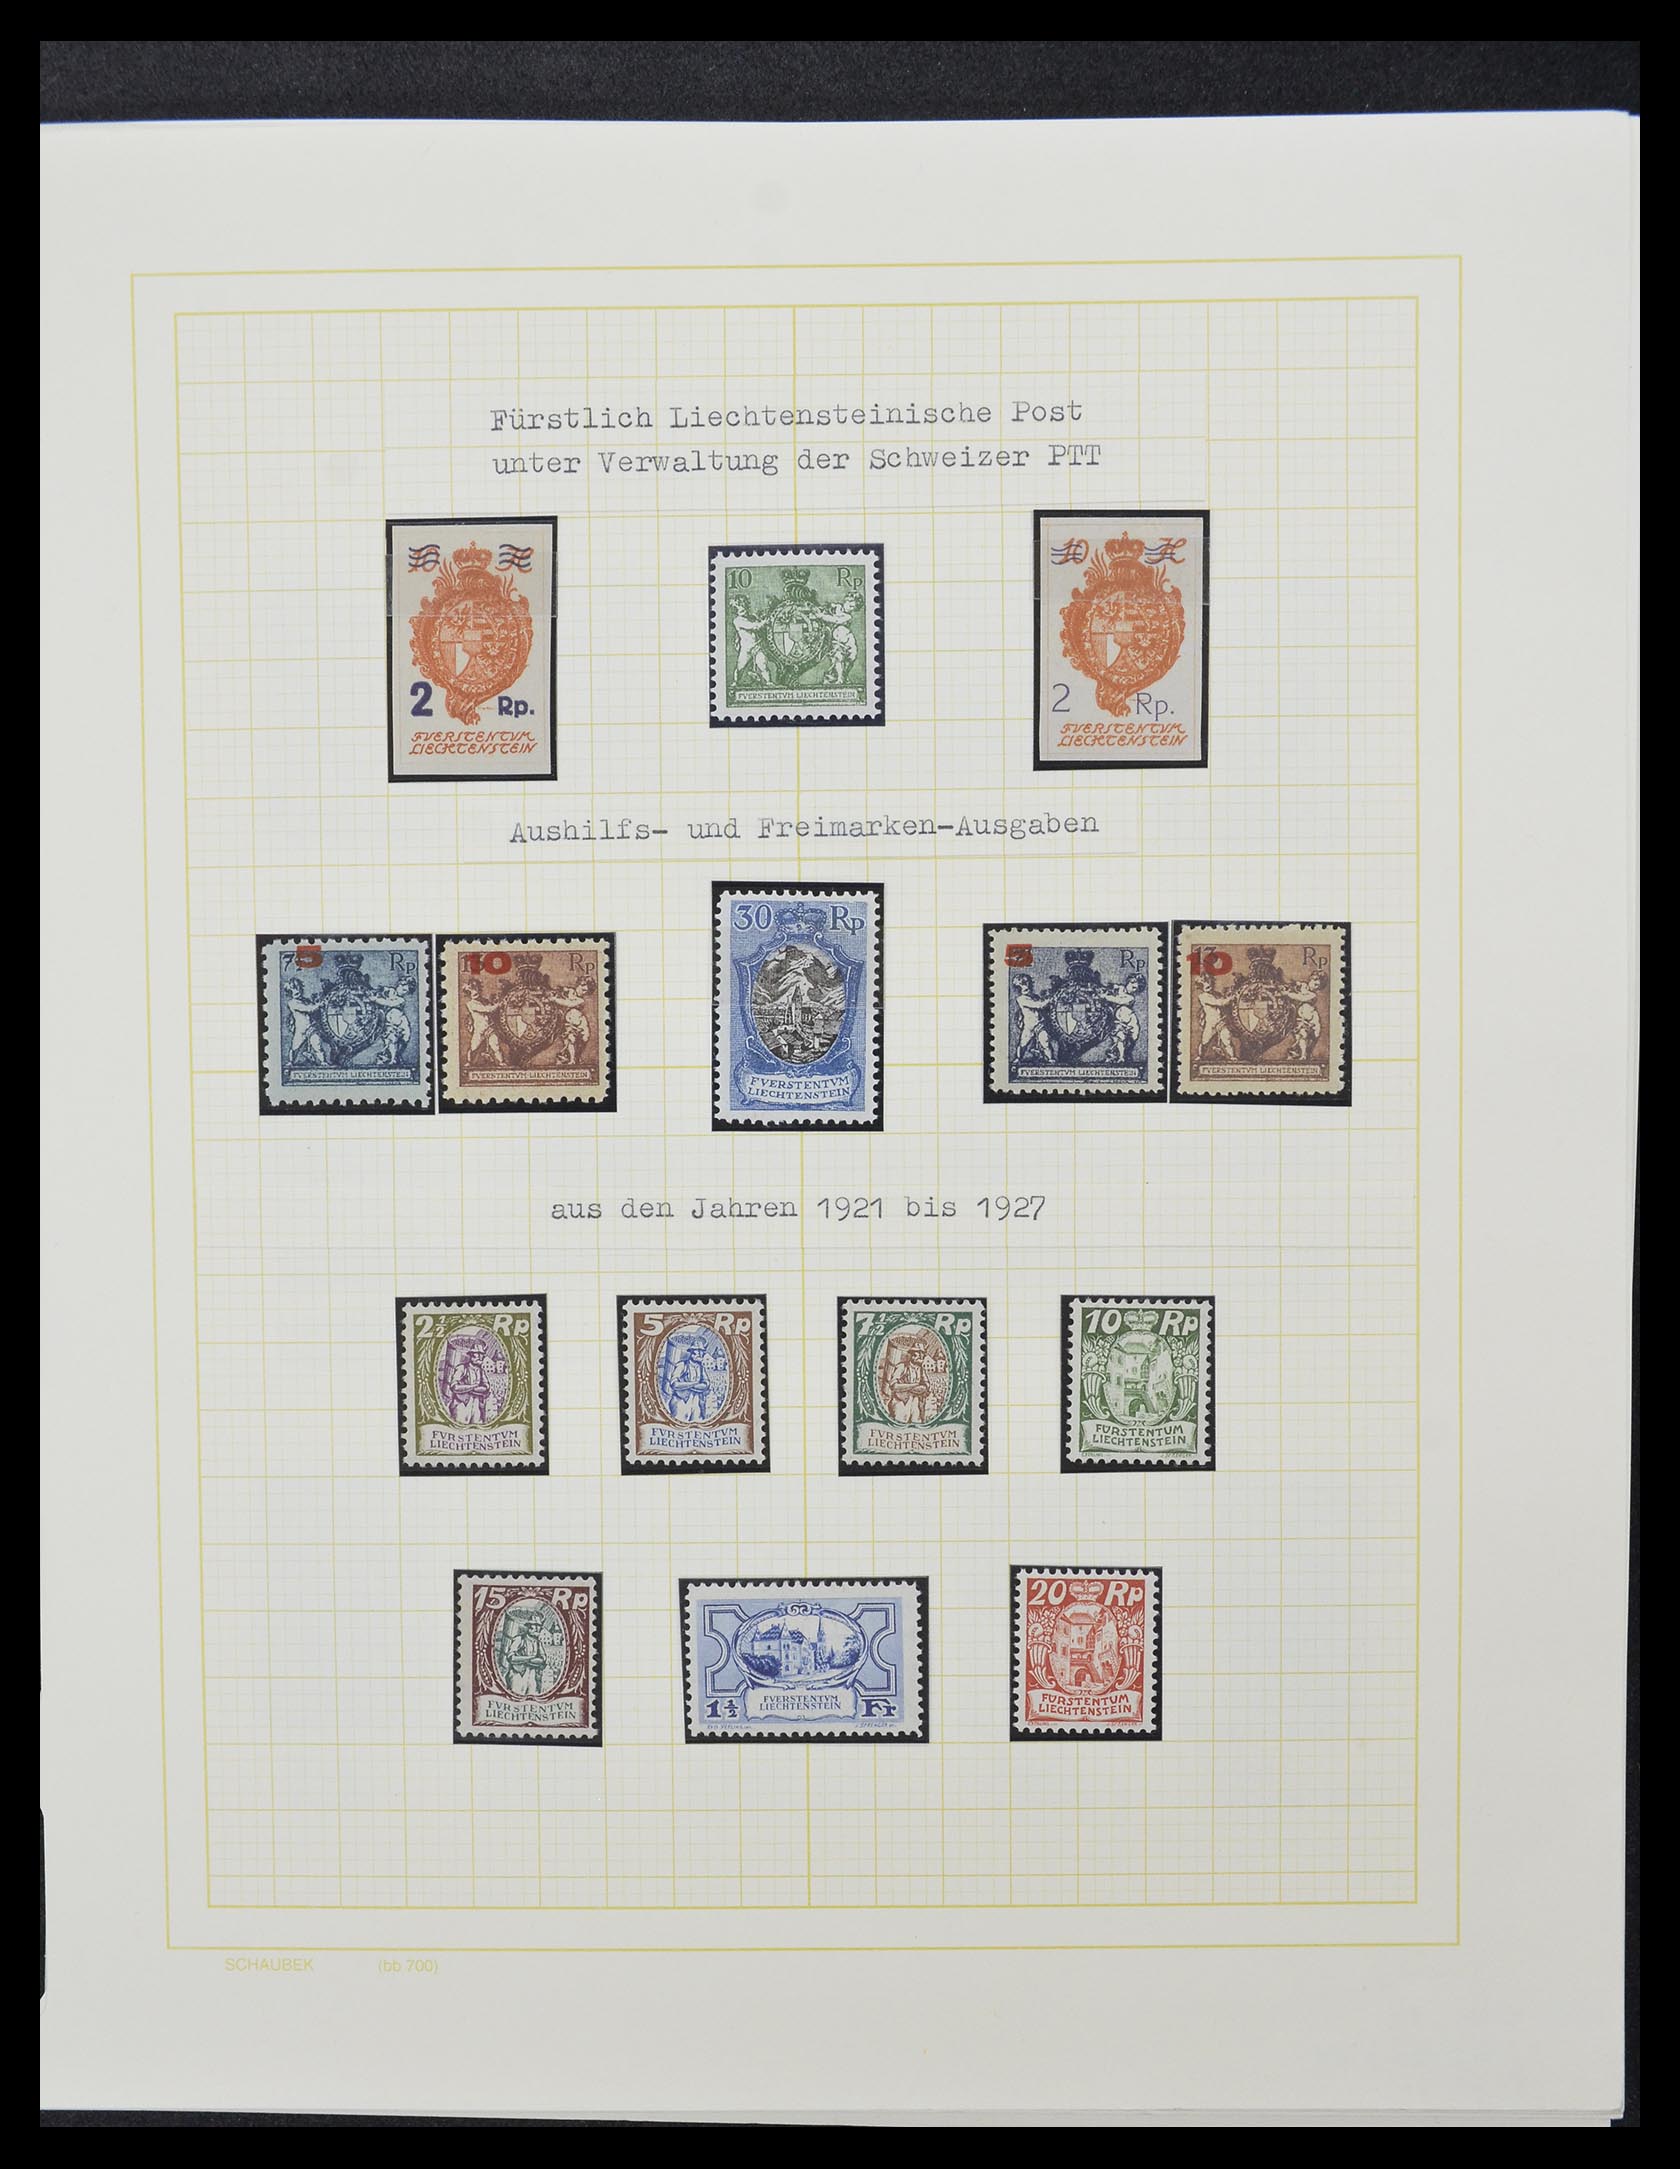 33138 003 - Stamp collection 33138 Liechtenstein 1912-2002.